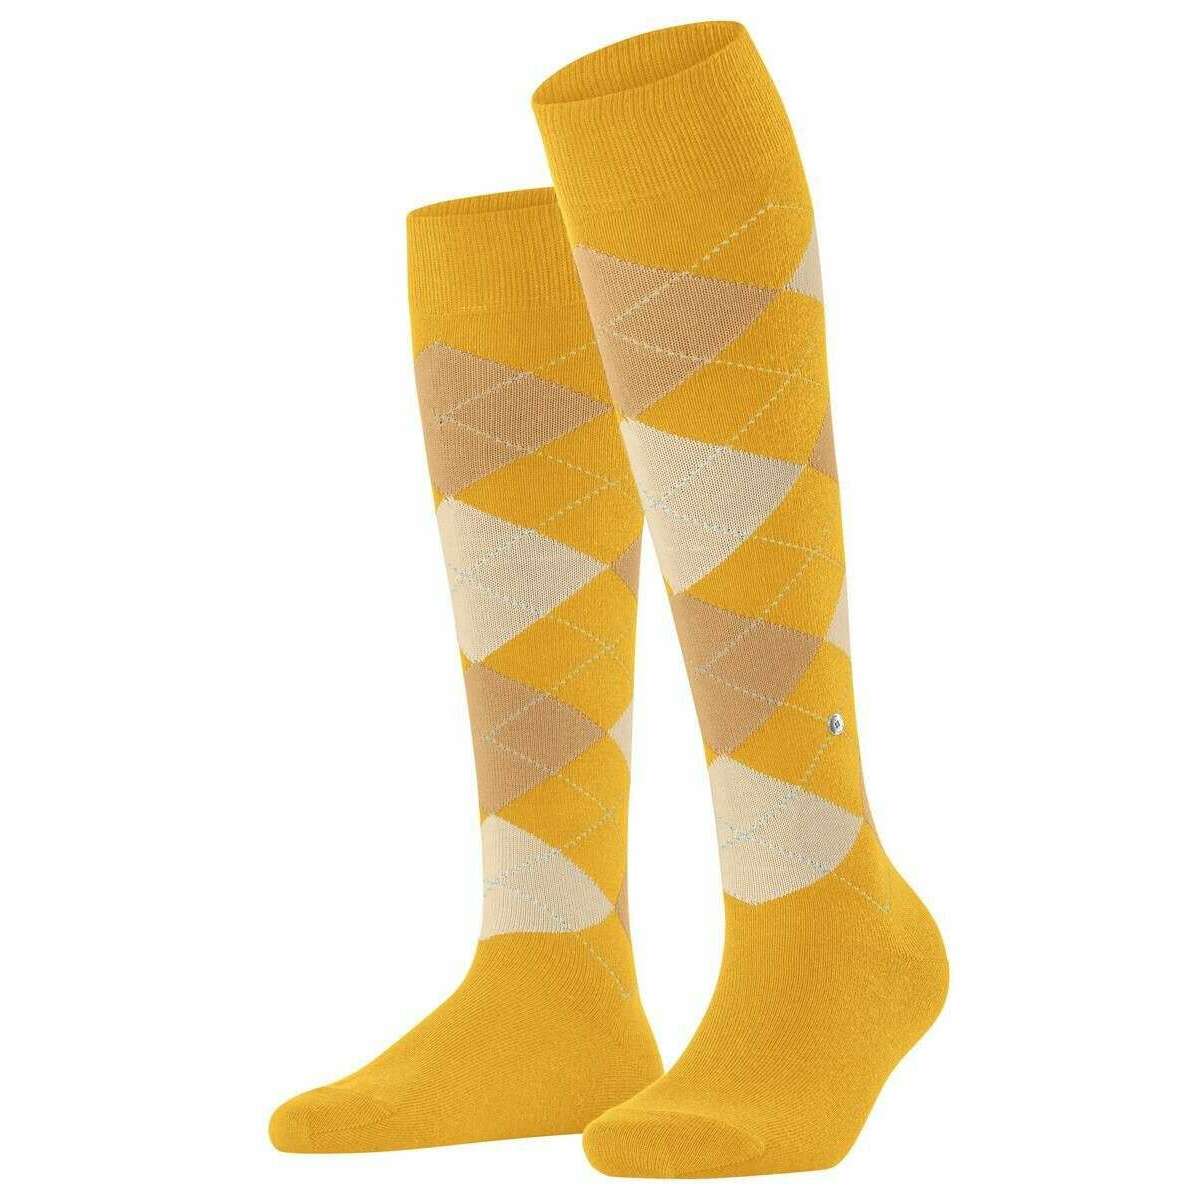 Burlington Queen Knee High Socks - Solar Yellow